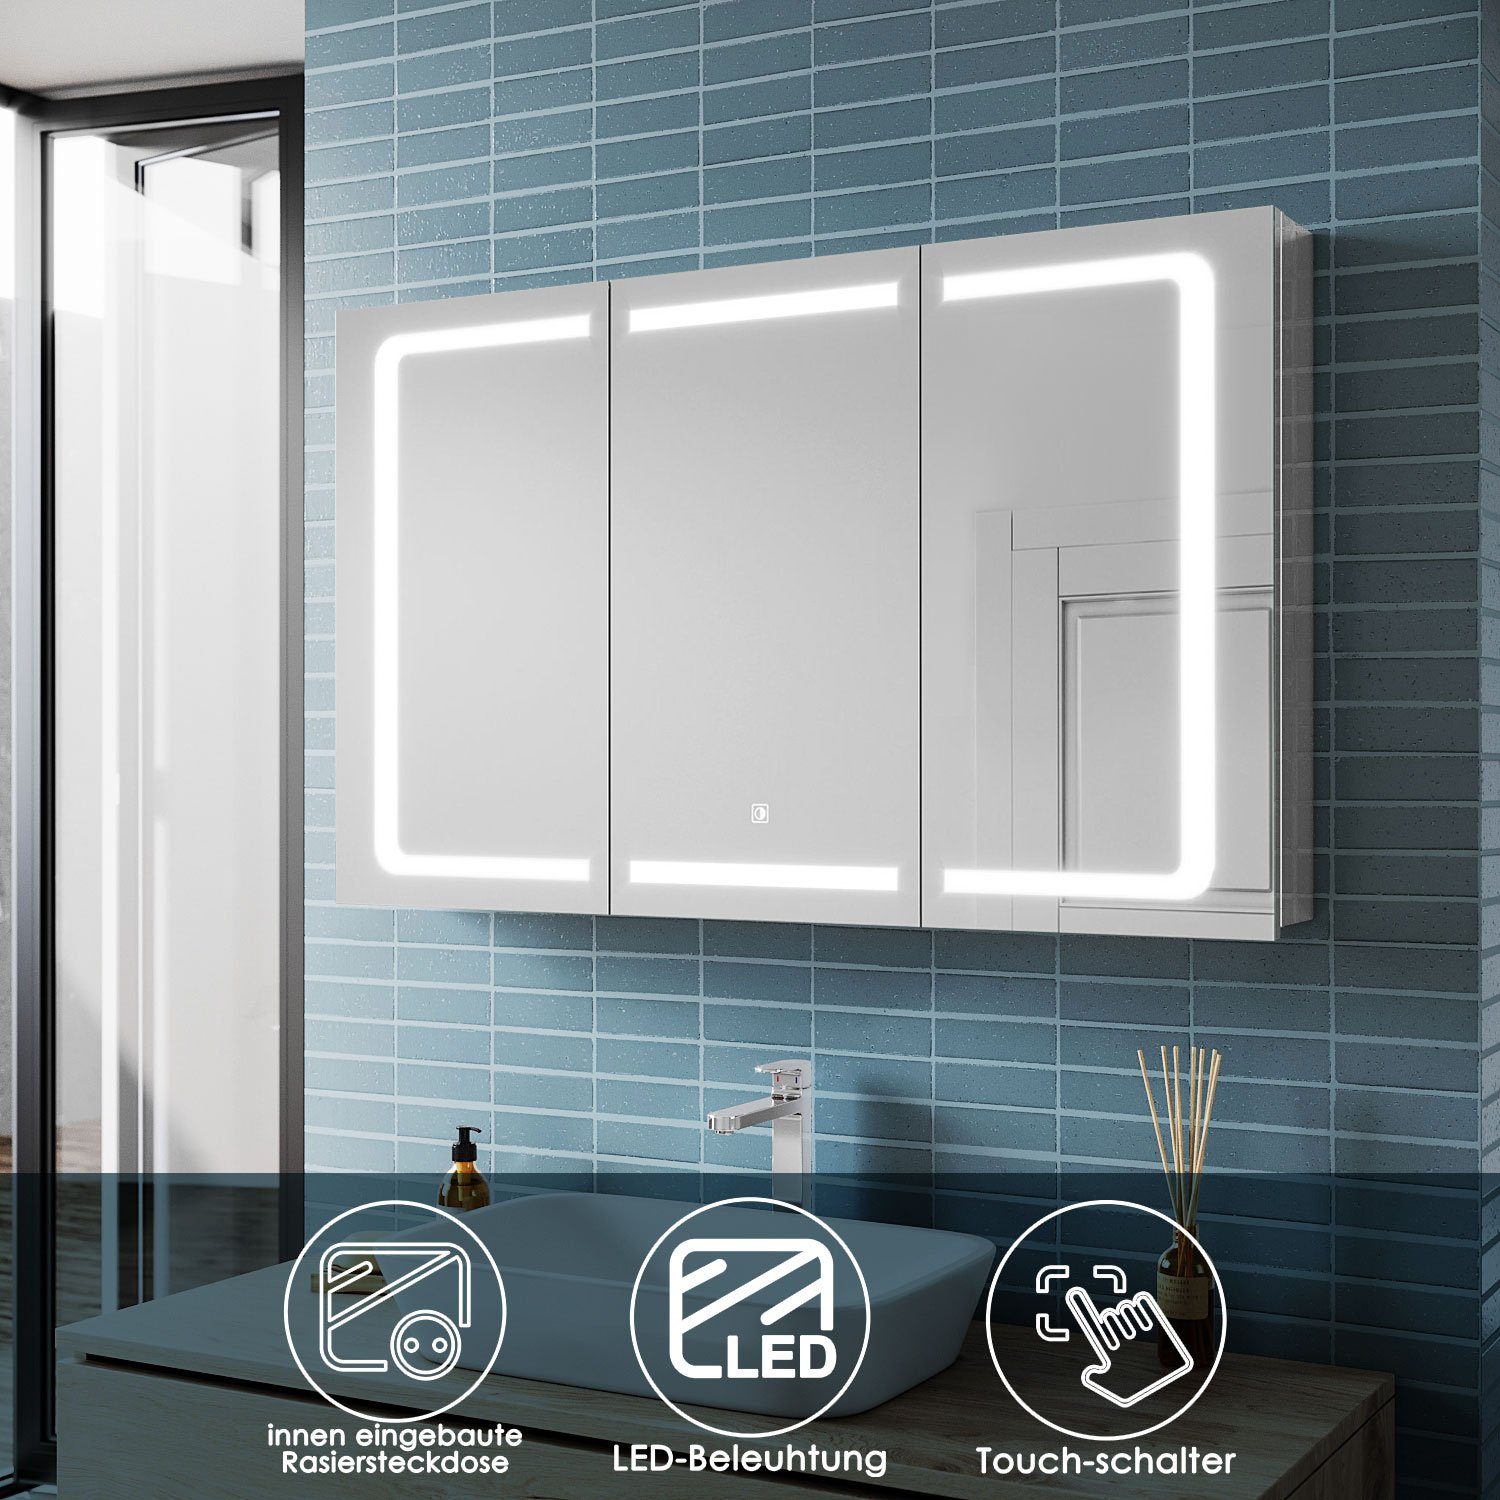 SONNI Spiegelschrank Spiegelschrank Bad 105 cm LED mit Beleuchtung Badschrank Steckdose Badspiegel, Edelstah, Badezimmerspiegelschrank